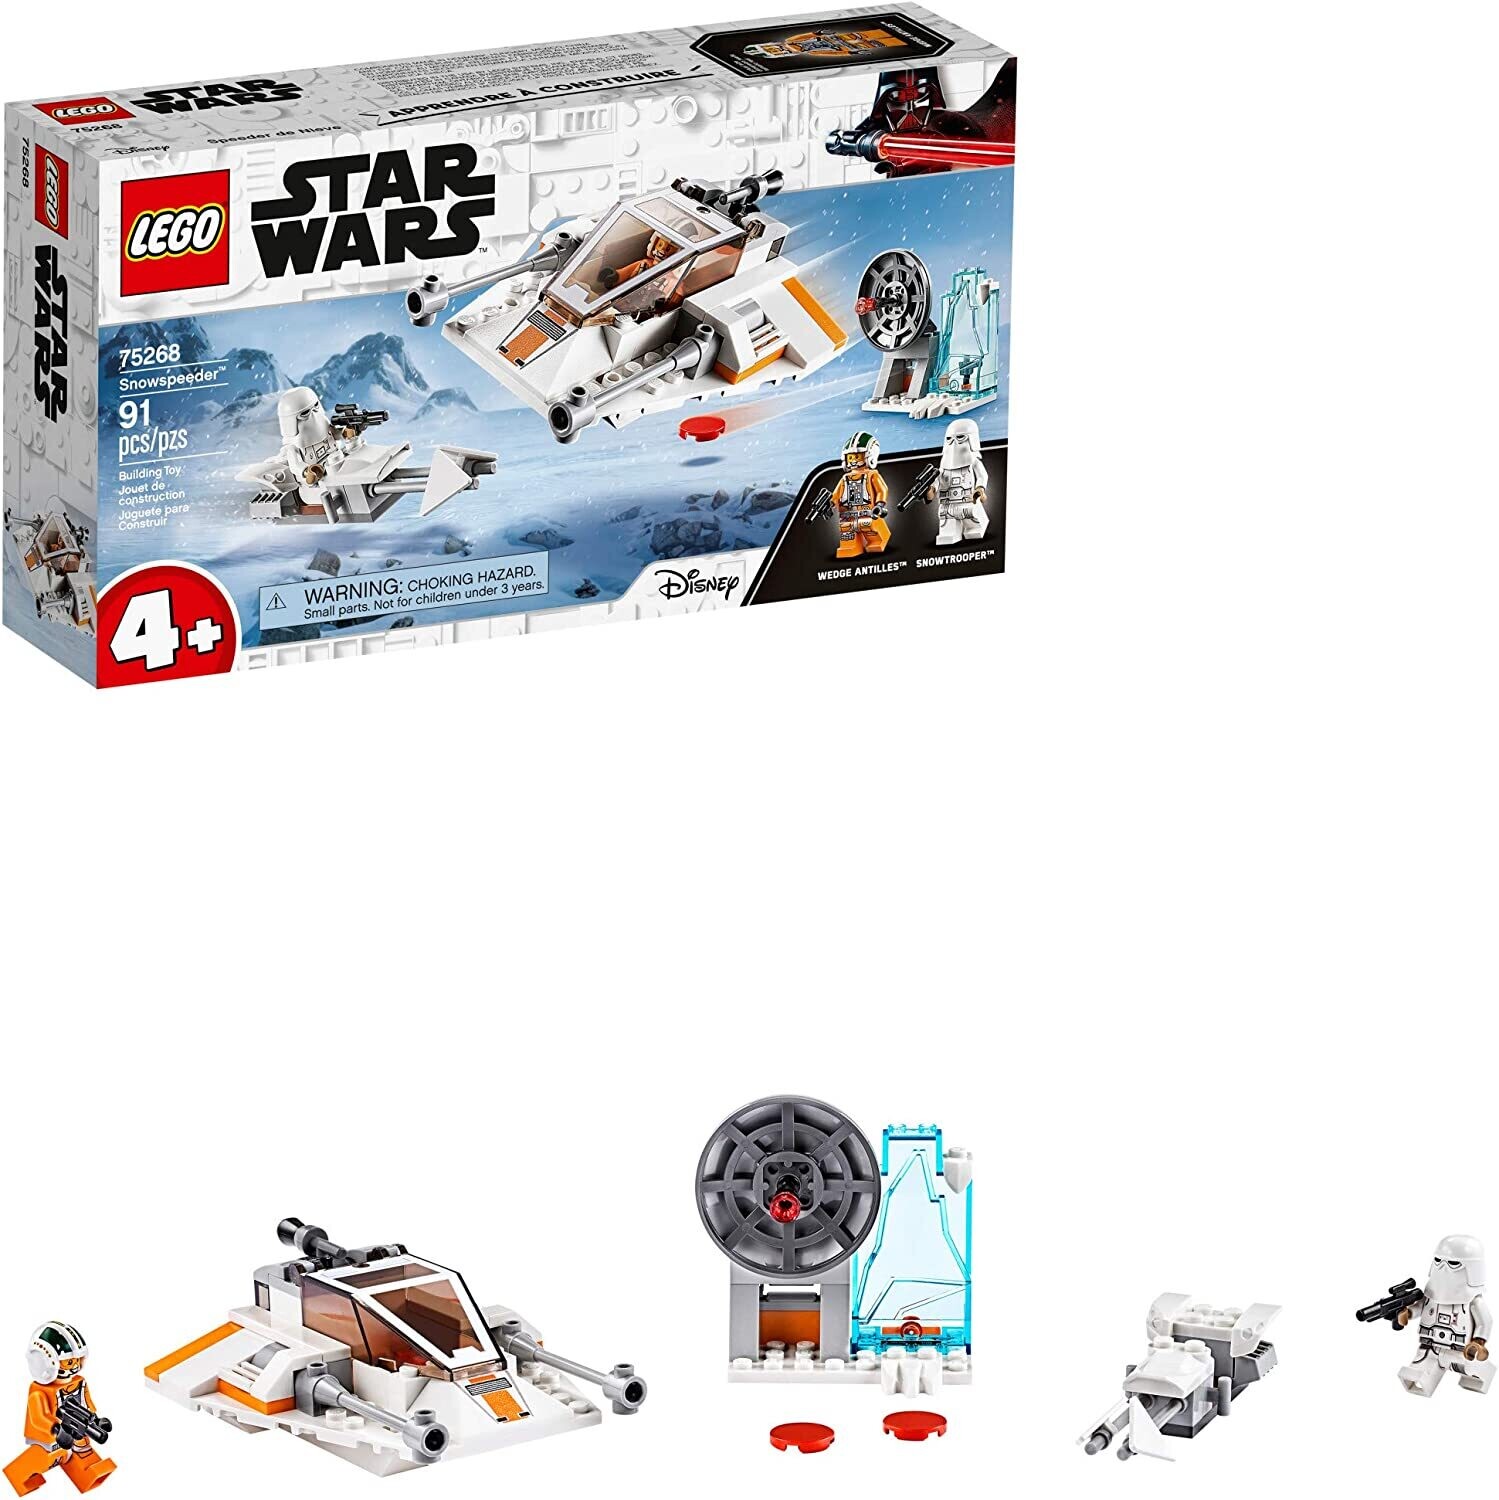 Lego 75268 Star Wars Snowspeeder